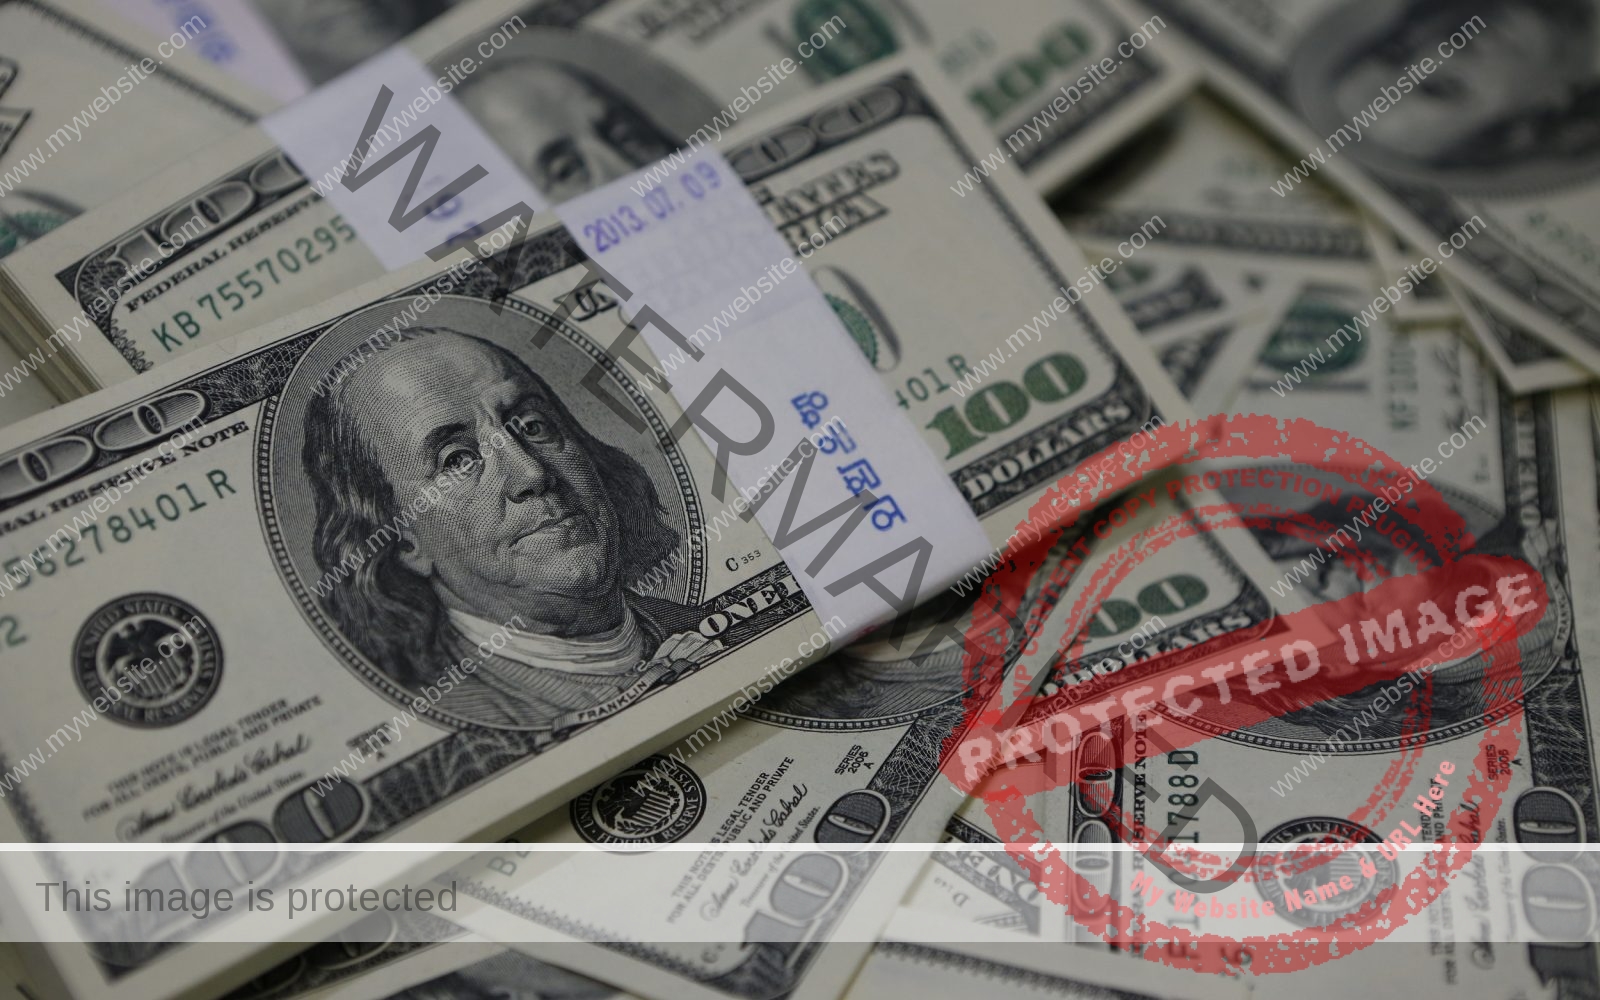 سعر الدولار أمام الجنيه المصري في البنوك لـ يوم 30 ديسمبر